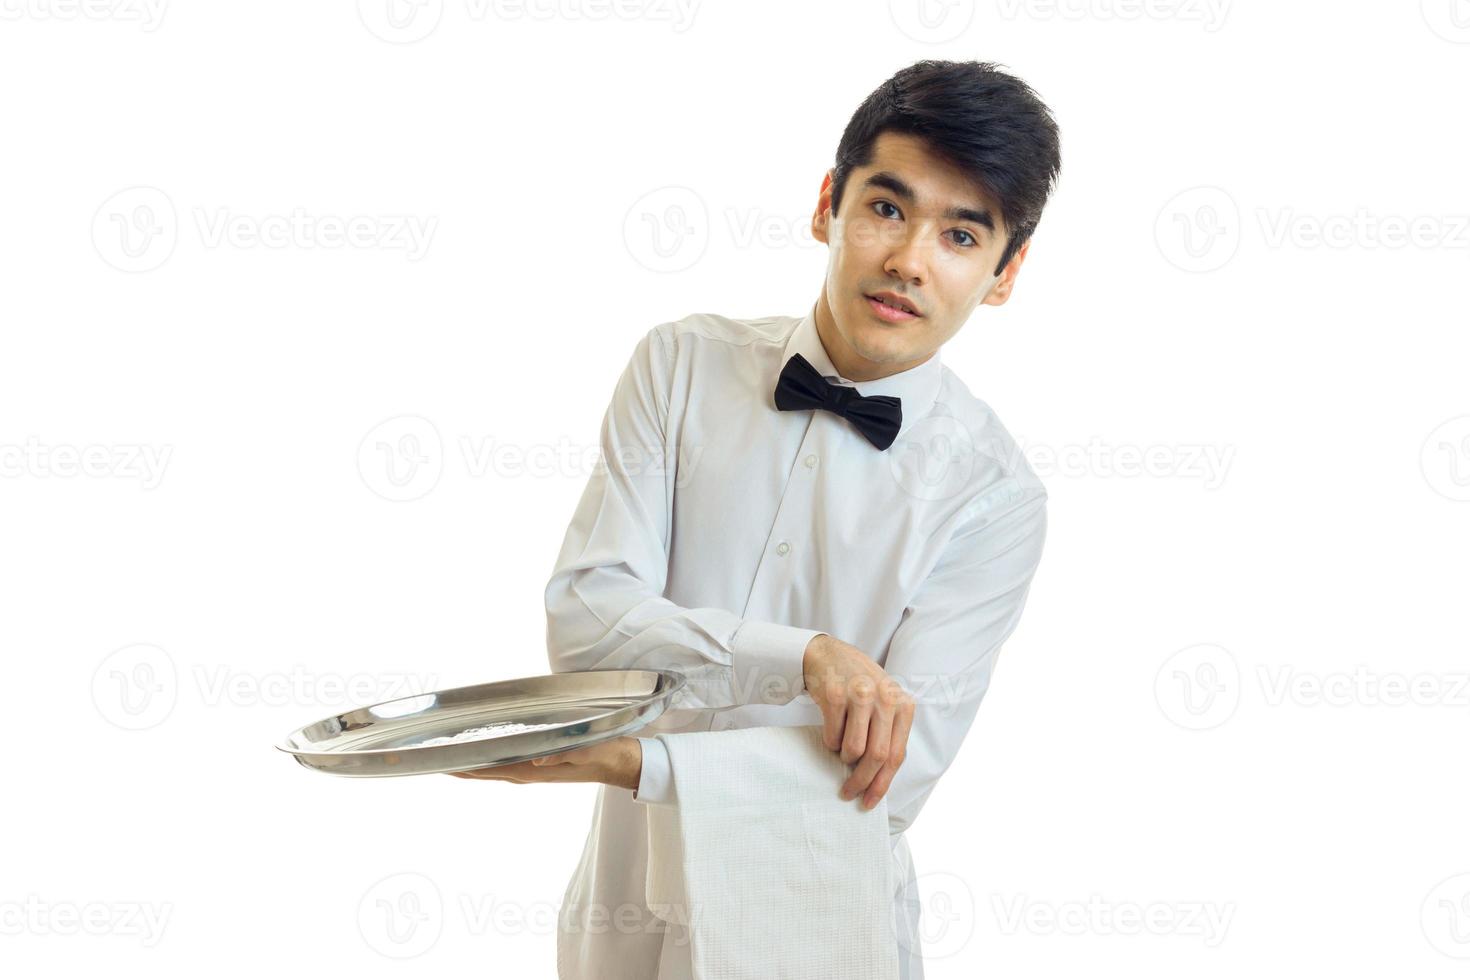 garçom jovem bonito em uma camisa branca com cabelo preto e inclinou-se para o lado e segurando uma bandeja de comida foto